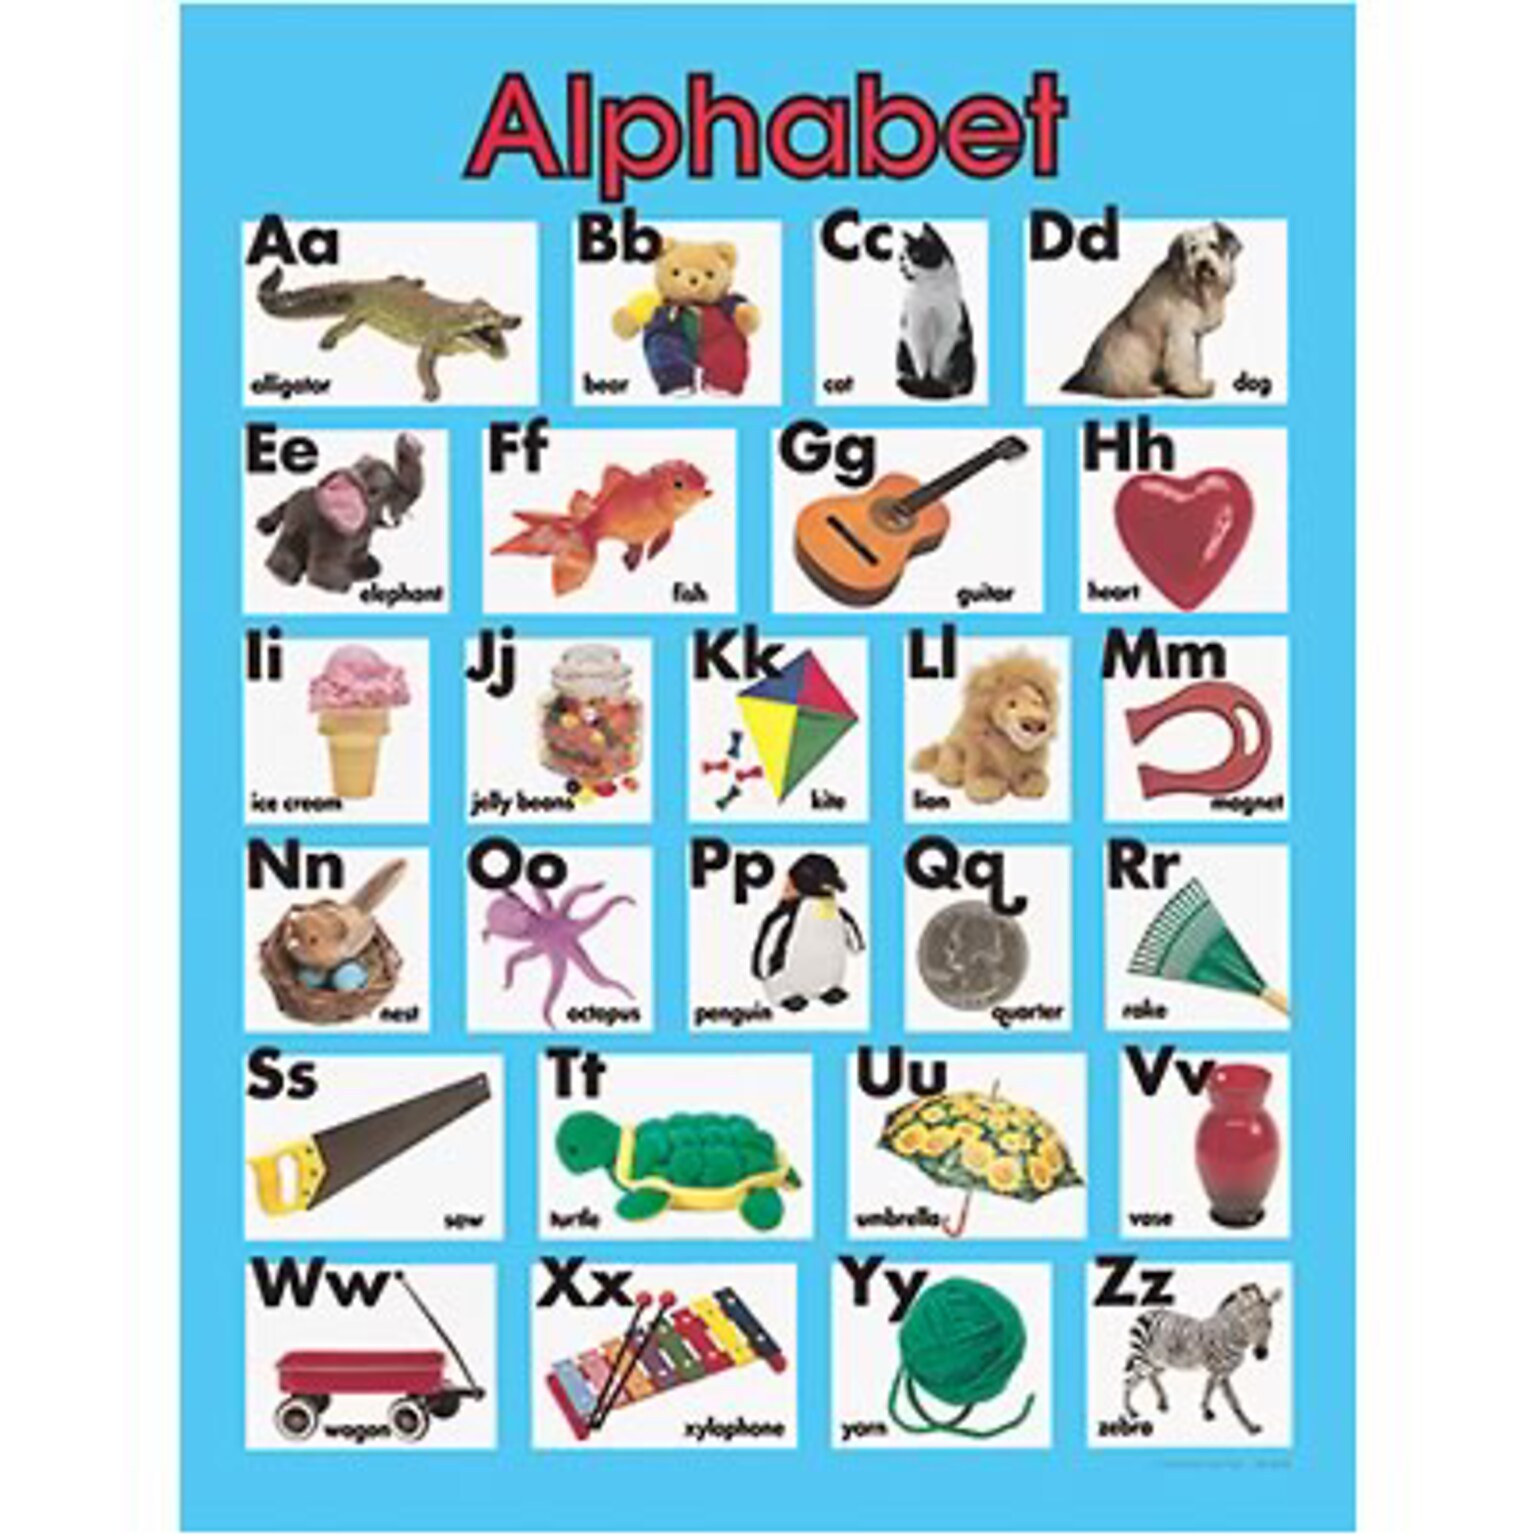 Alphabet Chartlet